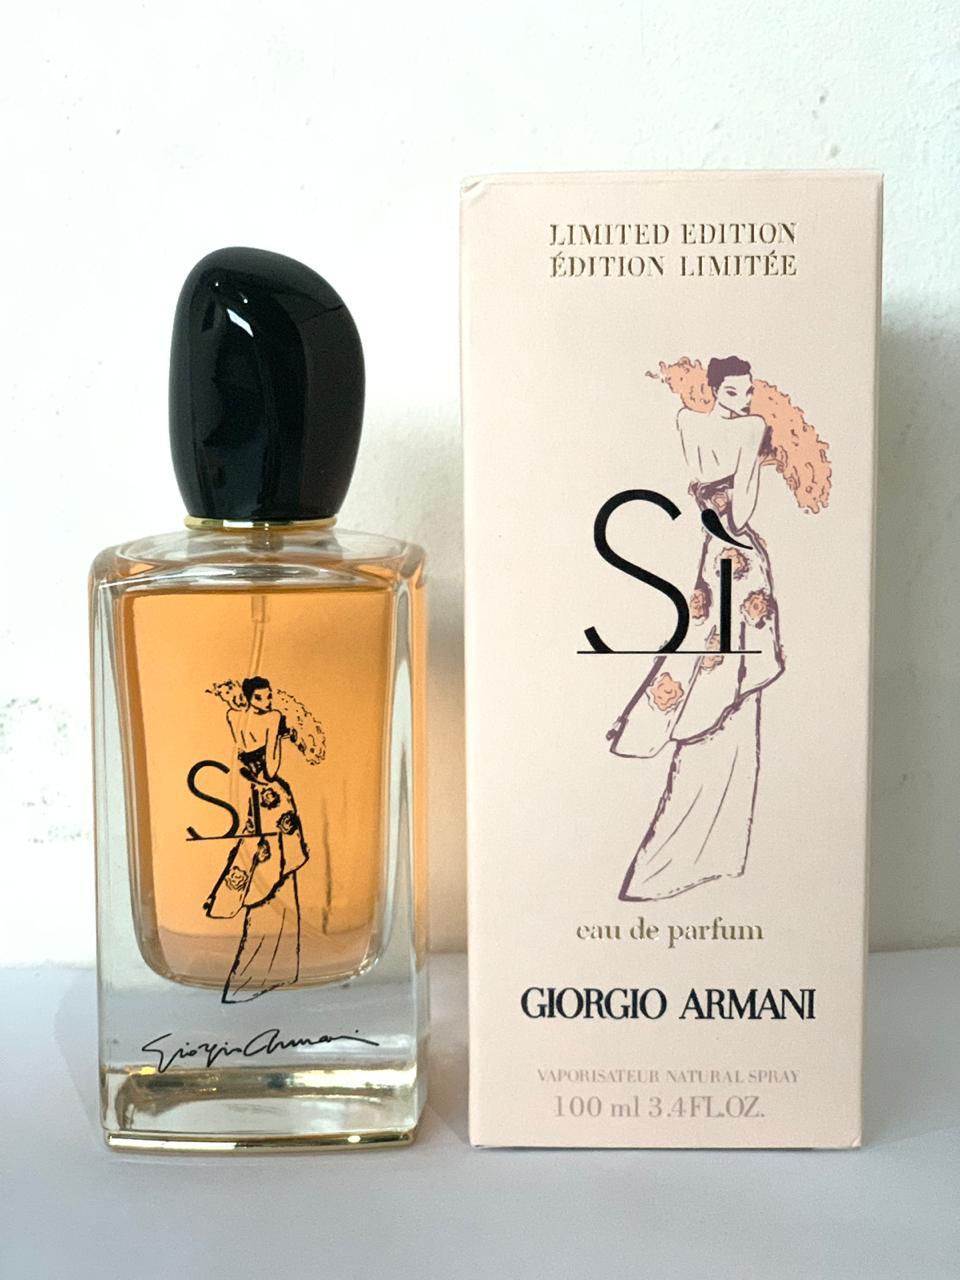 giorgio armani si limited edition perfume